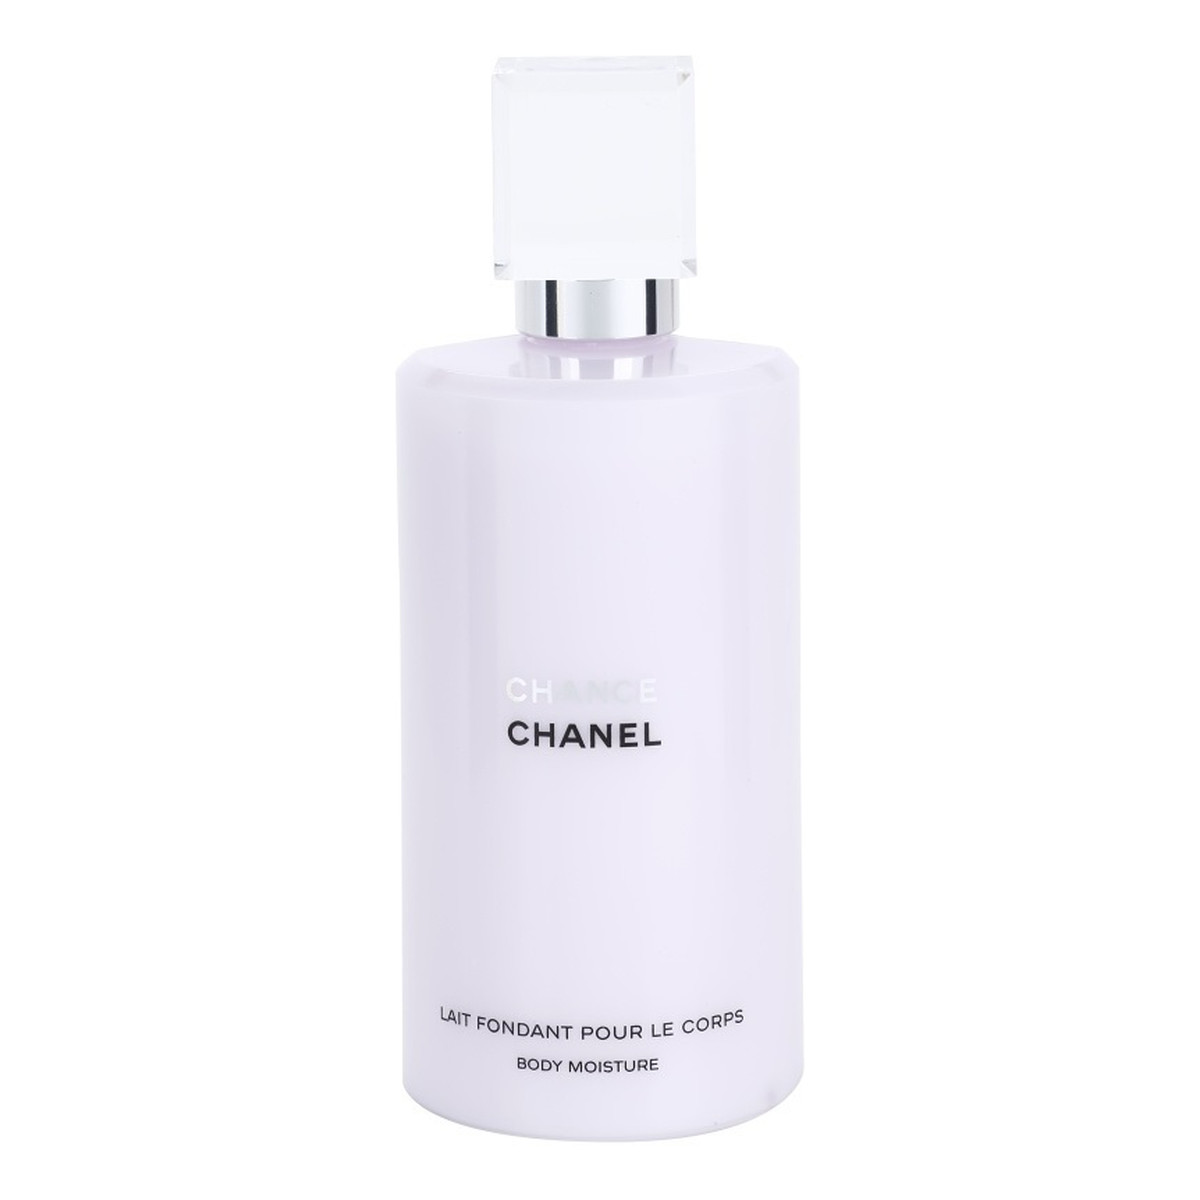 Chanel Chance mleczko do ciała dla kobiet 200ml